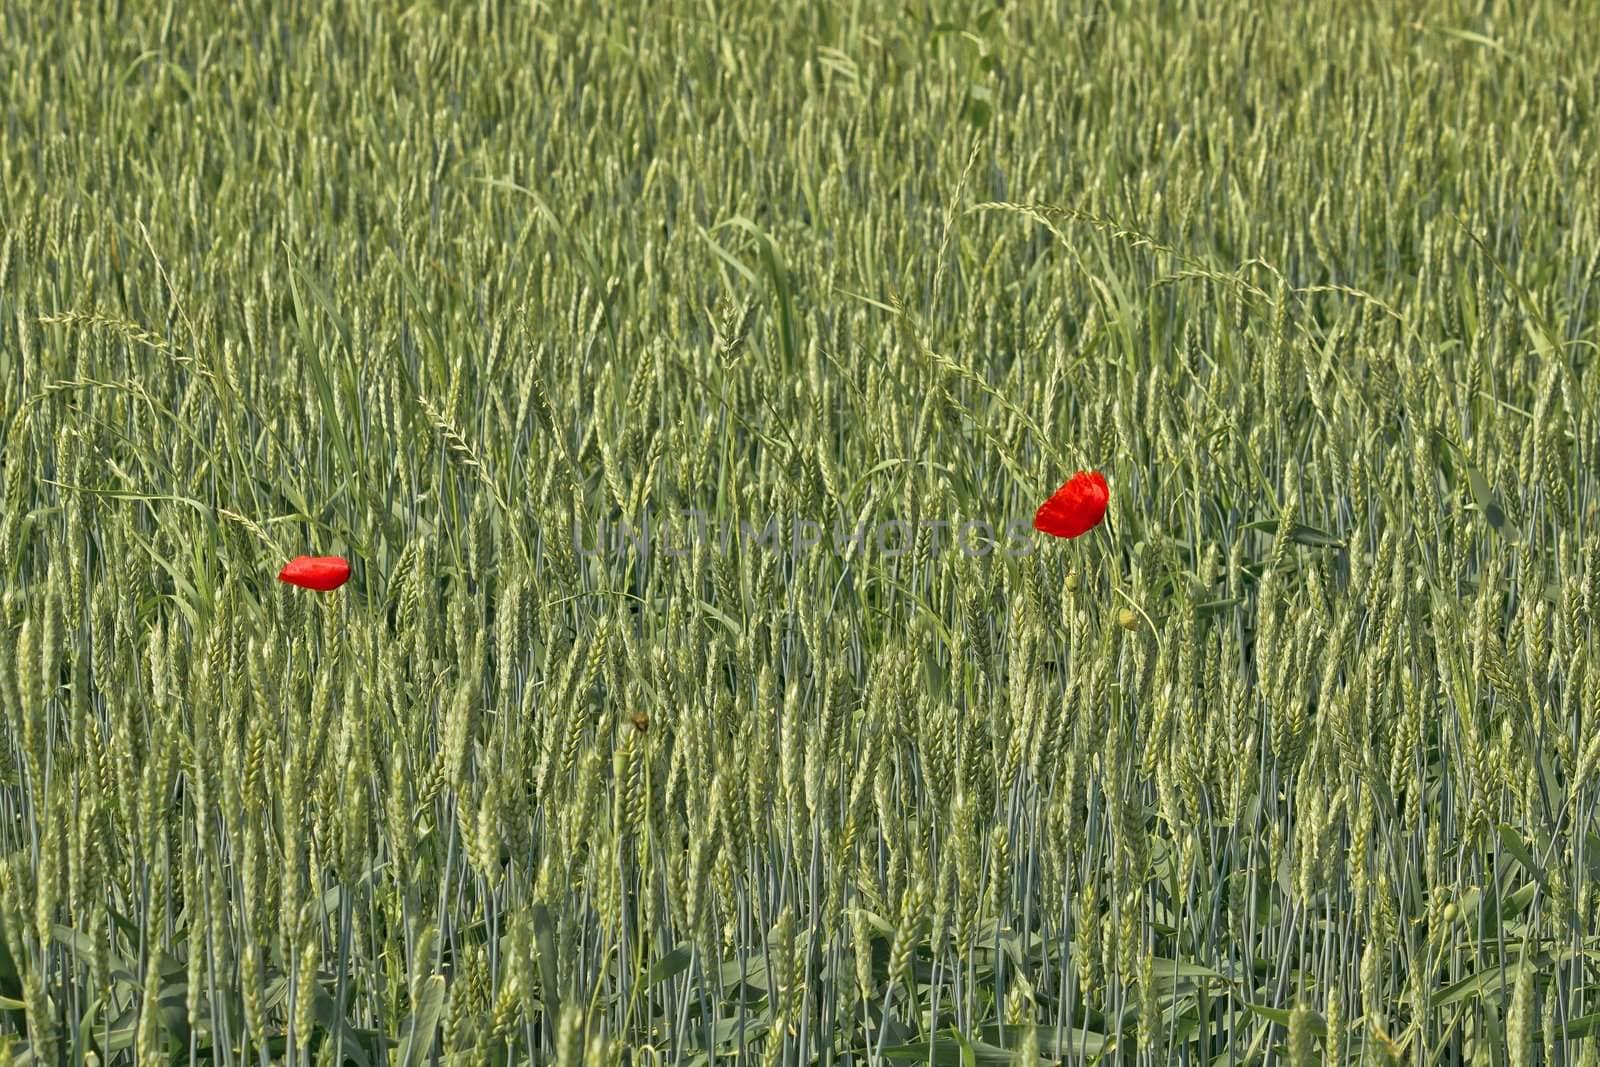 Two poppy flowers in wheat field by xbrchx